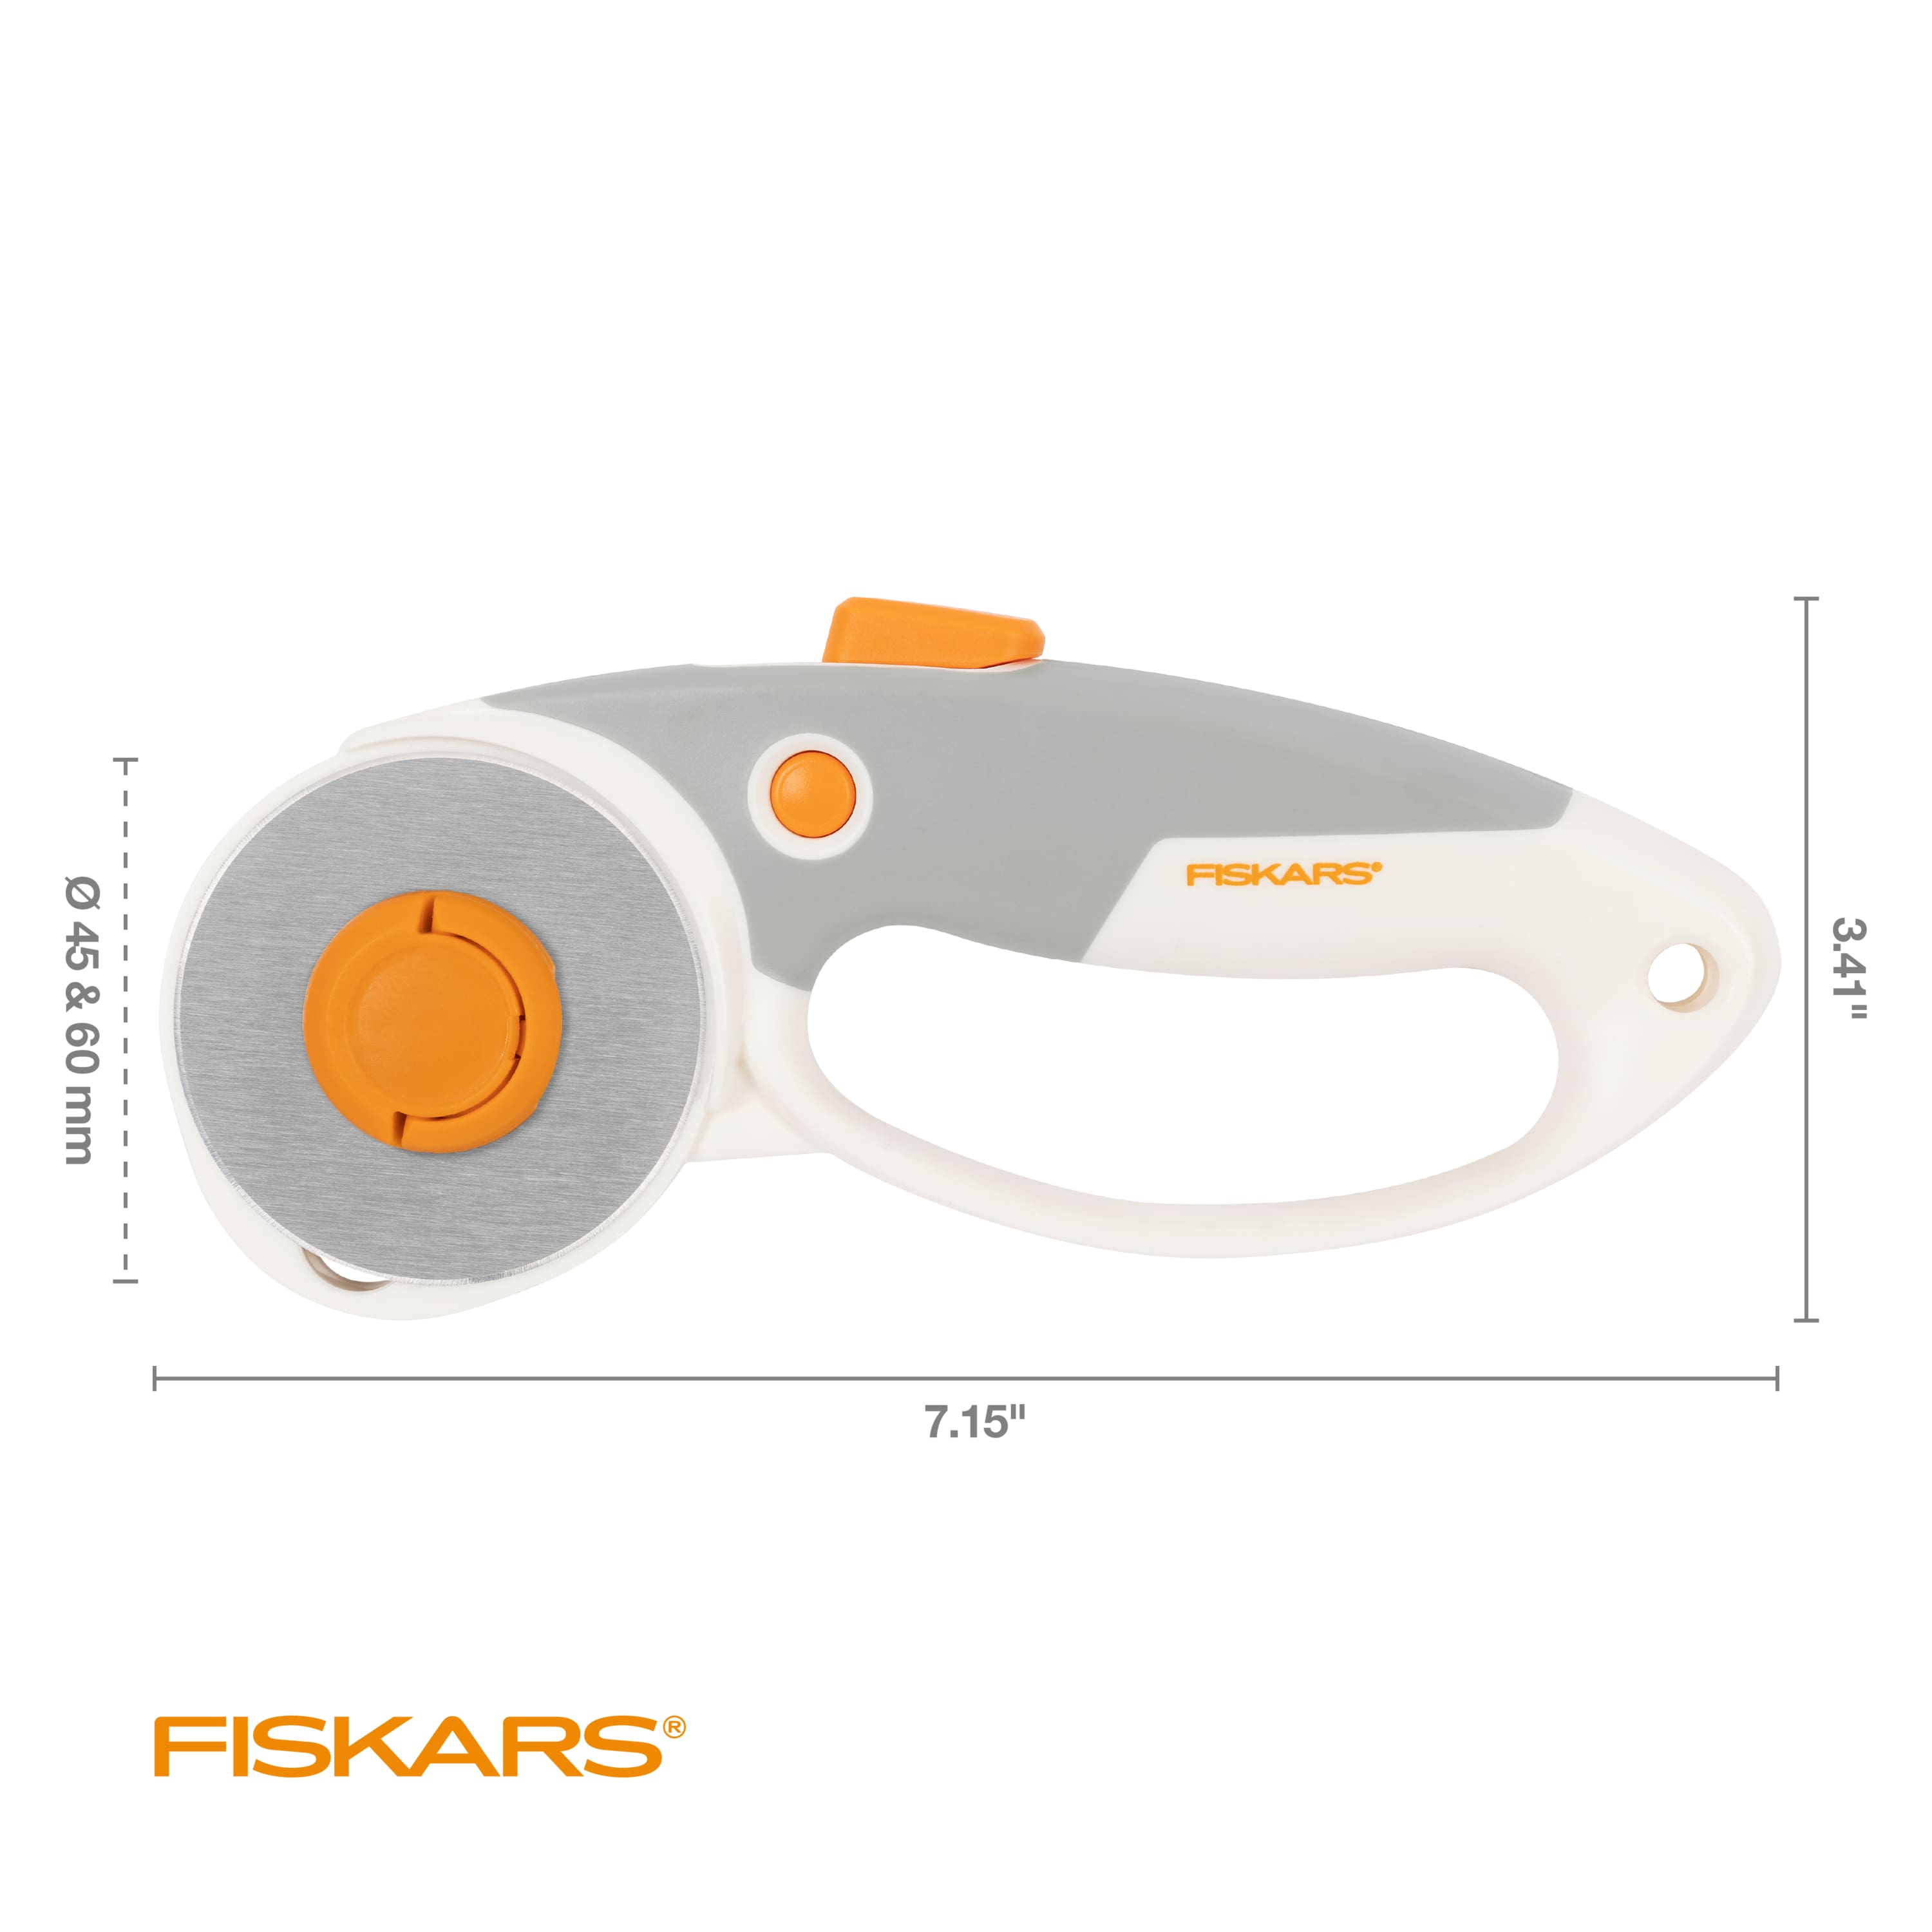 Fiskars&#xAE; DuoLoop Rotary Cutter